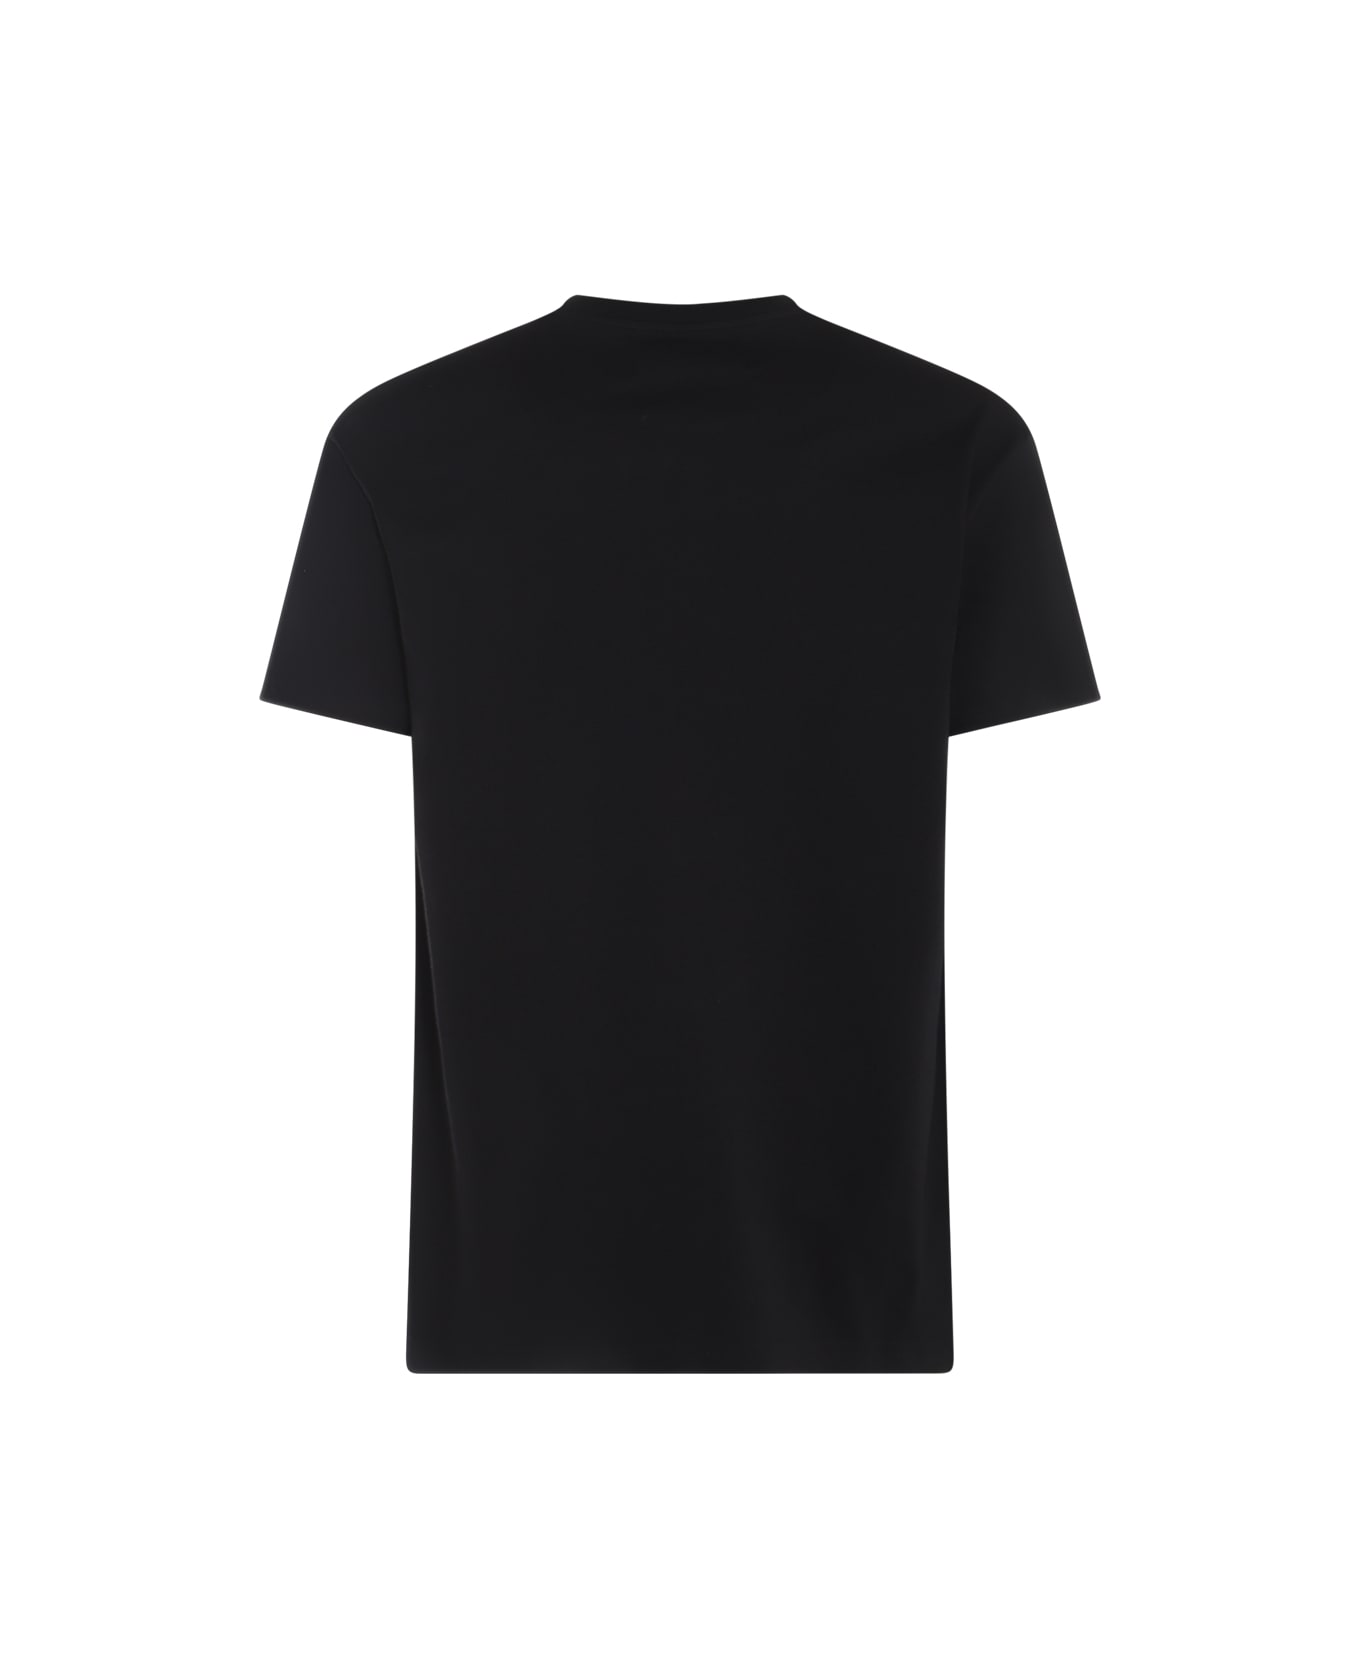 Vivienne Westwood Black And Beige Cotton T-shirt - Black Tシャツ